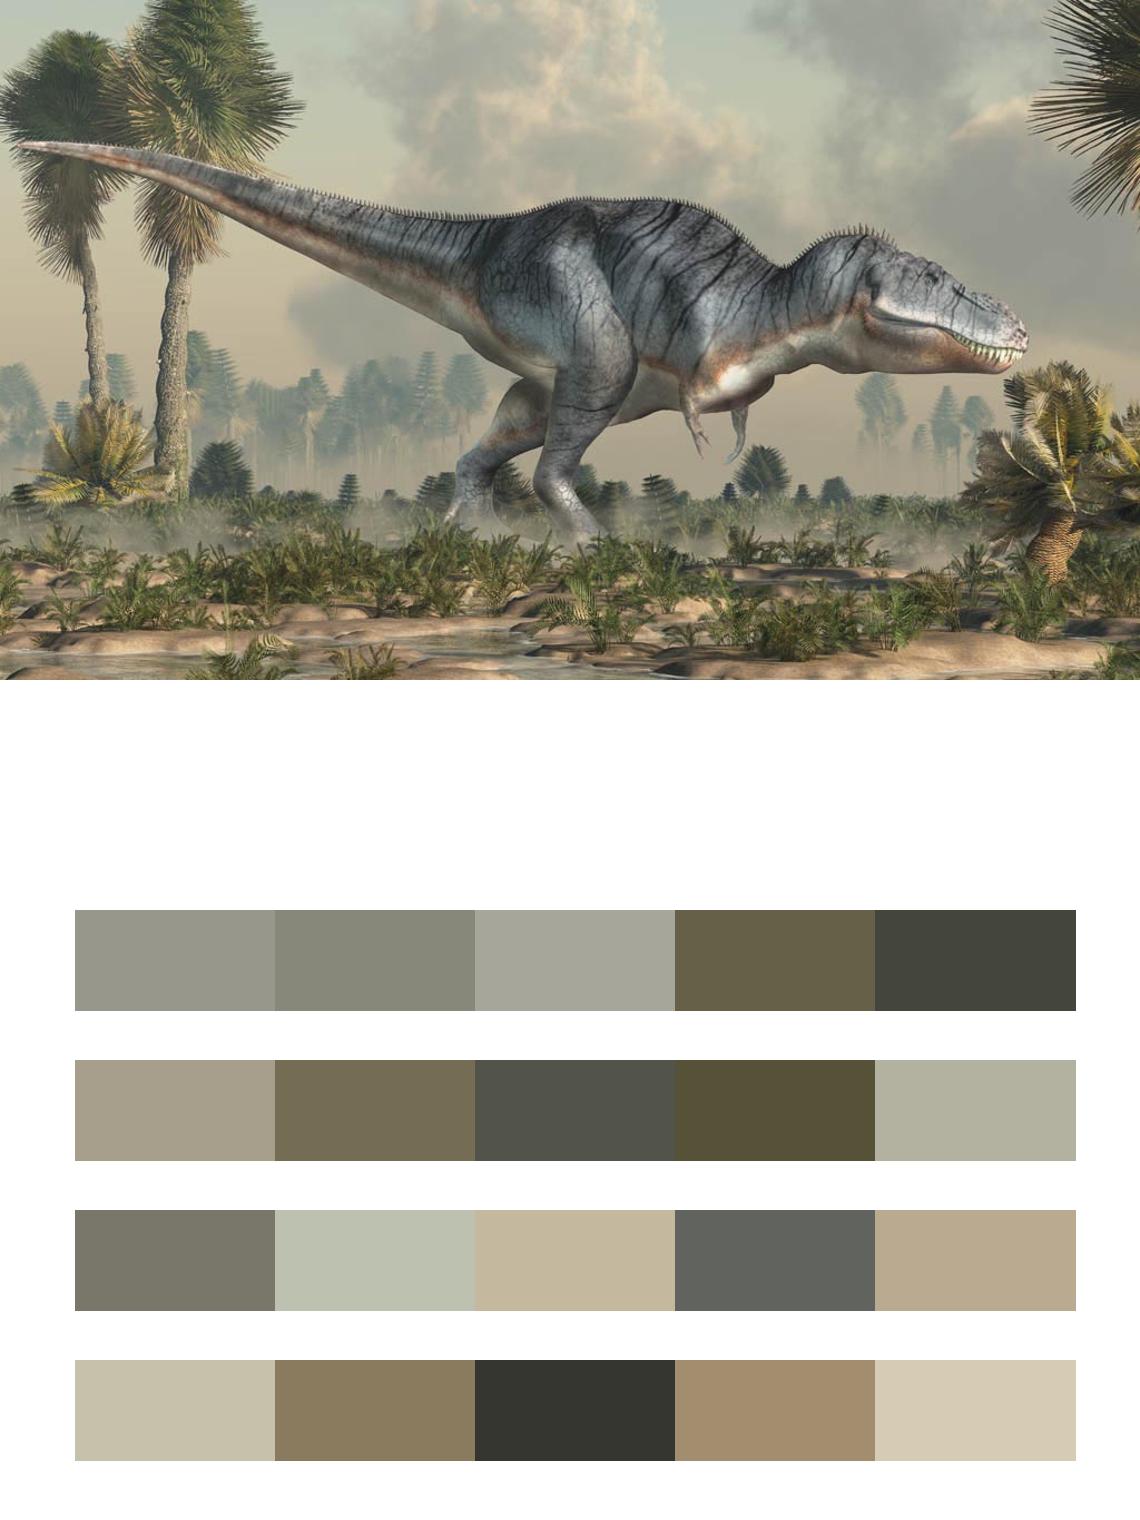 Динозавр Цератозавр цвета